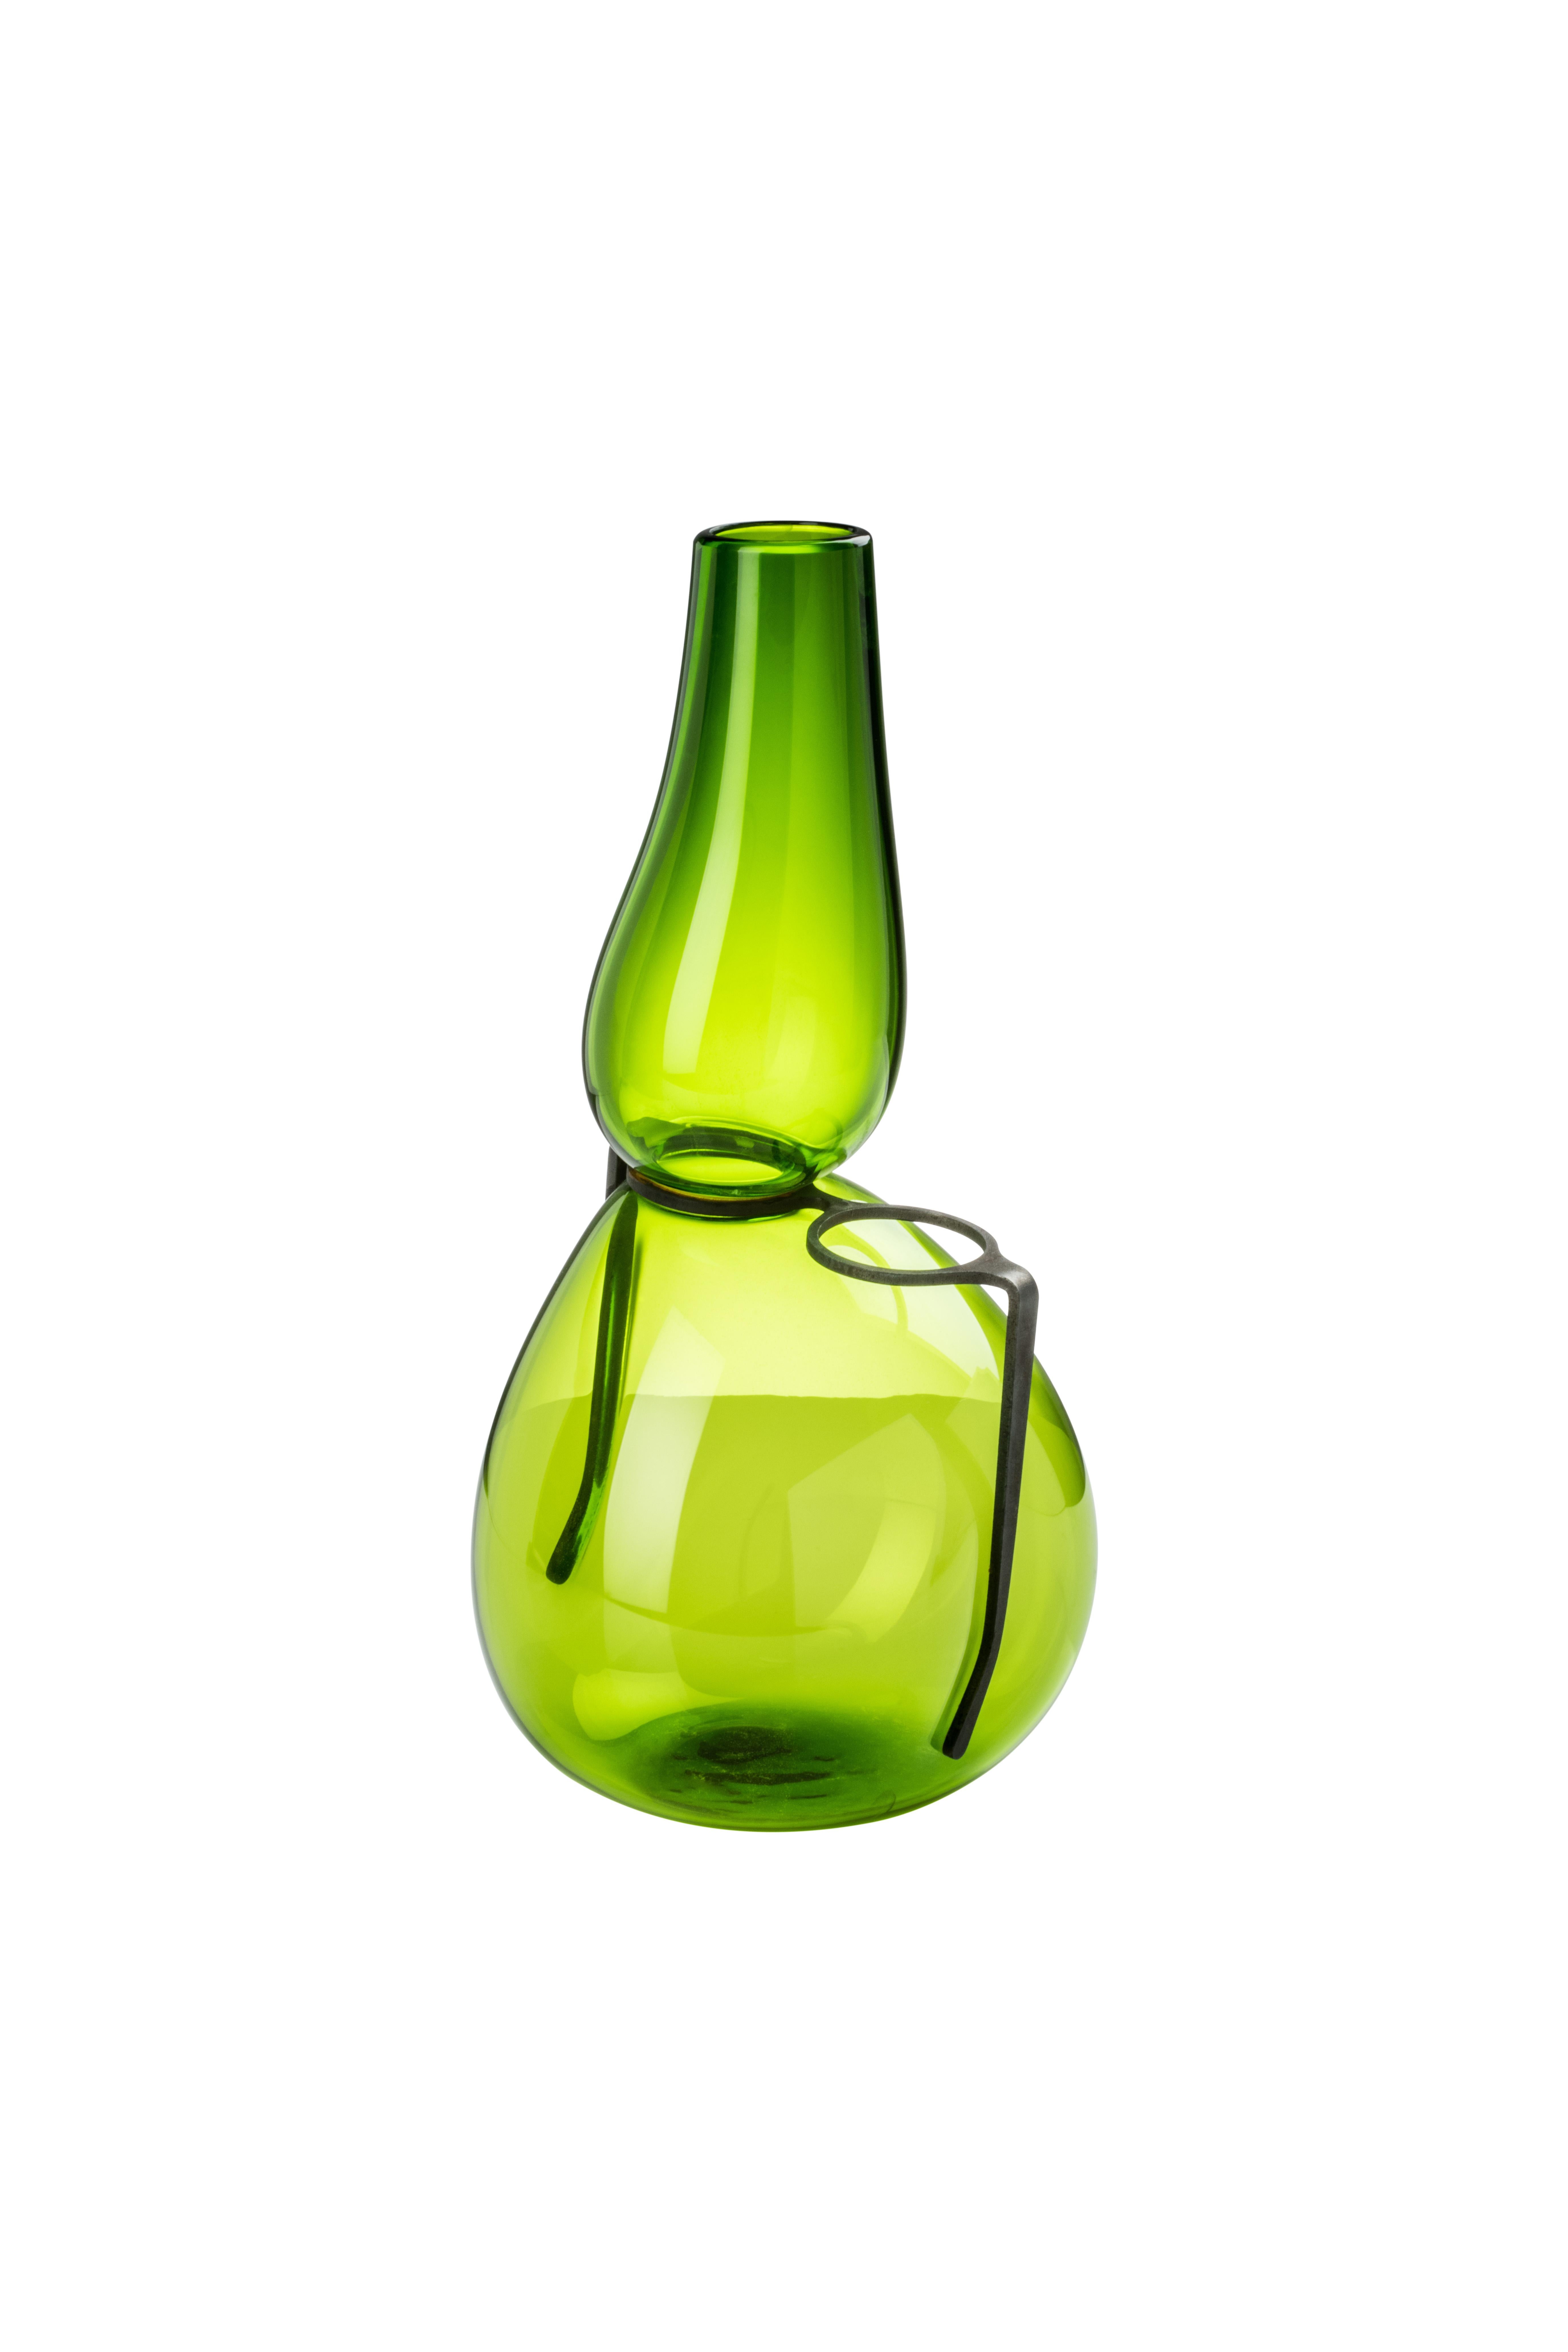 Venini Glasvase mit schlankem, geformtem Hals und schwarzer Glasskulptur. Aus grasgrünem Glas. Perfekt für die Inneneinrichtung als Behälter oder starkes Statement für jeden Raum.

Abmessungen: 25 cm Durchmesser x cm Höhe.